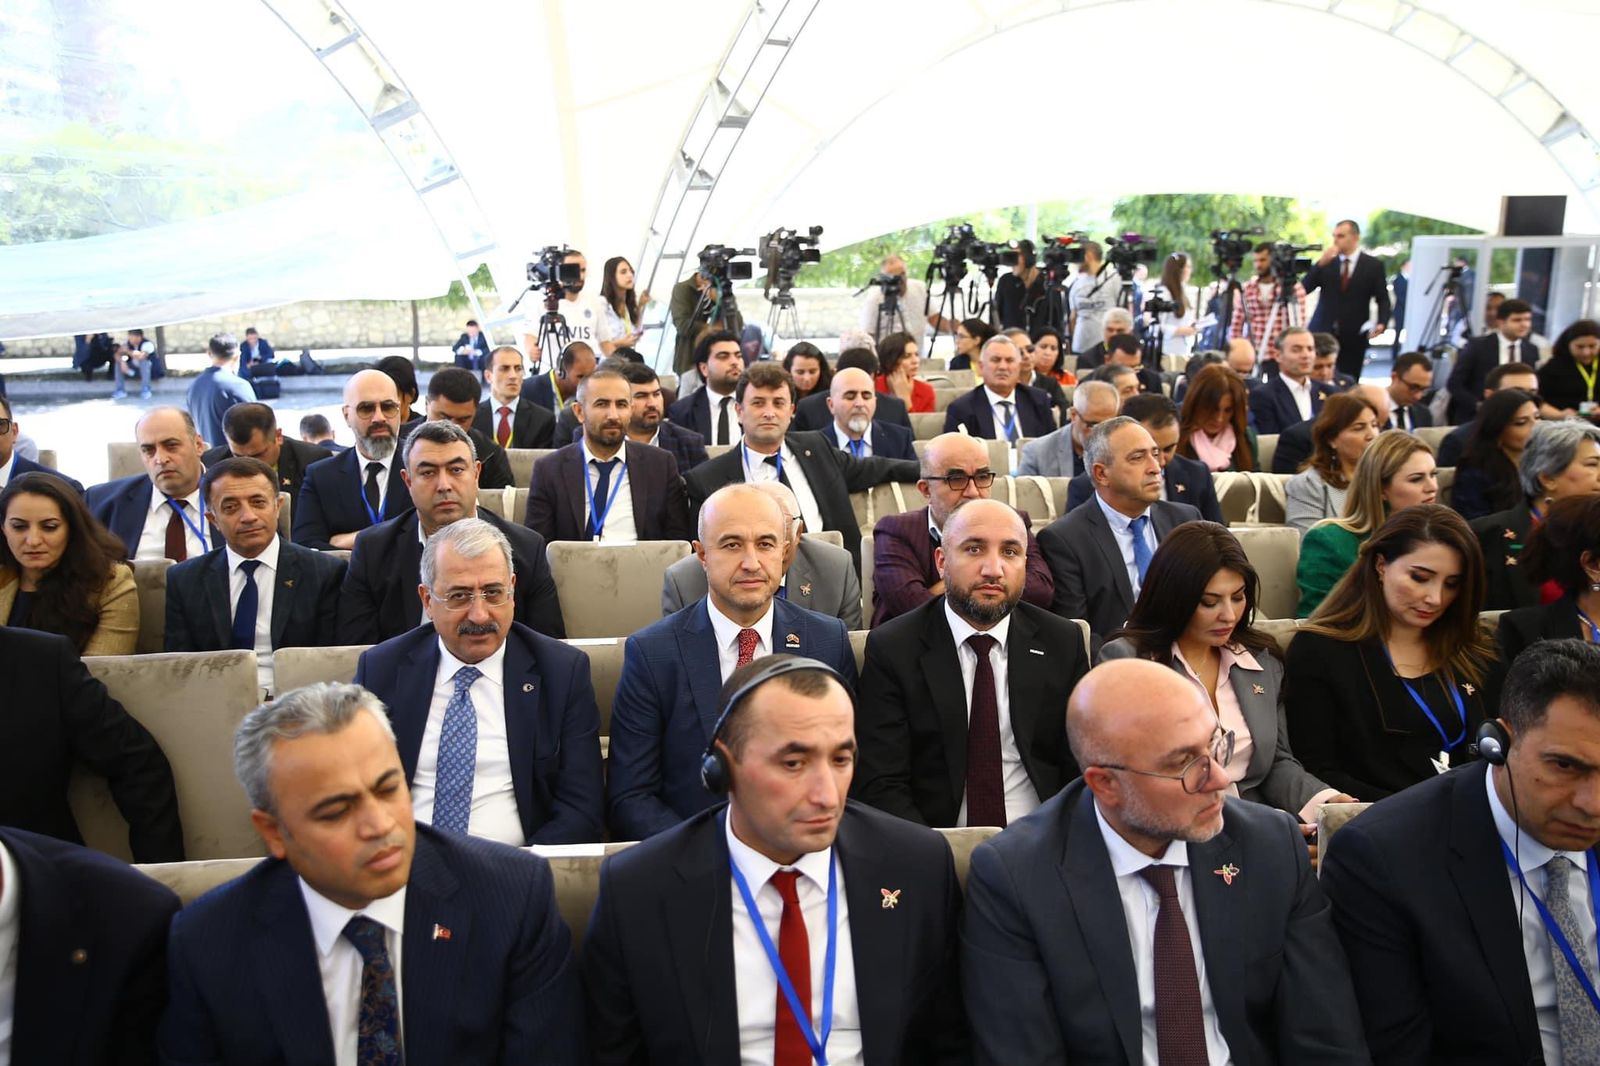 MÜSİAD-Azerbaycan нацелен на увеличение прямых иностранных инвестиций в экономику Азербайджана - Рашад Джабирли (ФОТО)